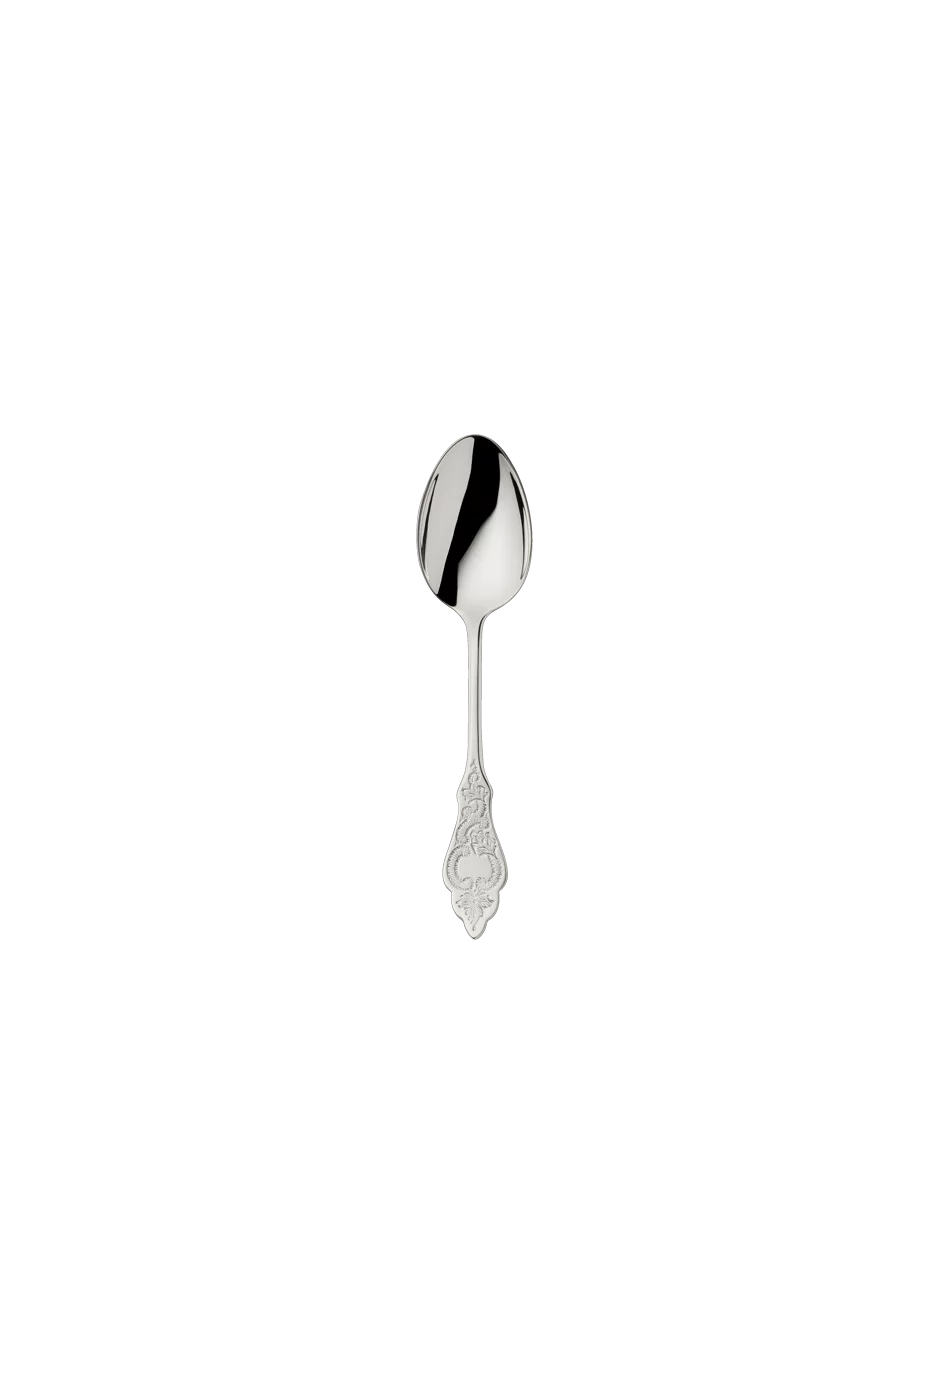 Ostfriesen Mocha Spoon 10,5 Cm (18/8 stainless steel)